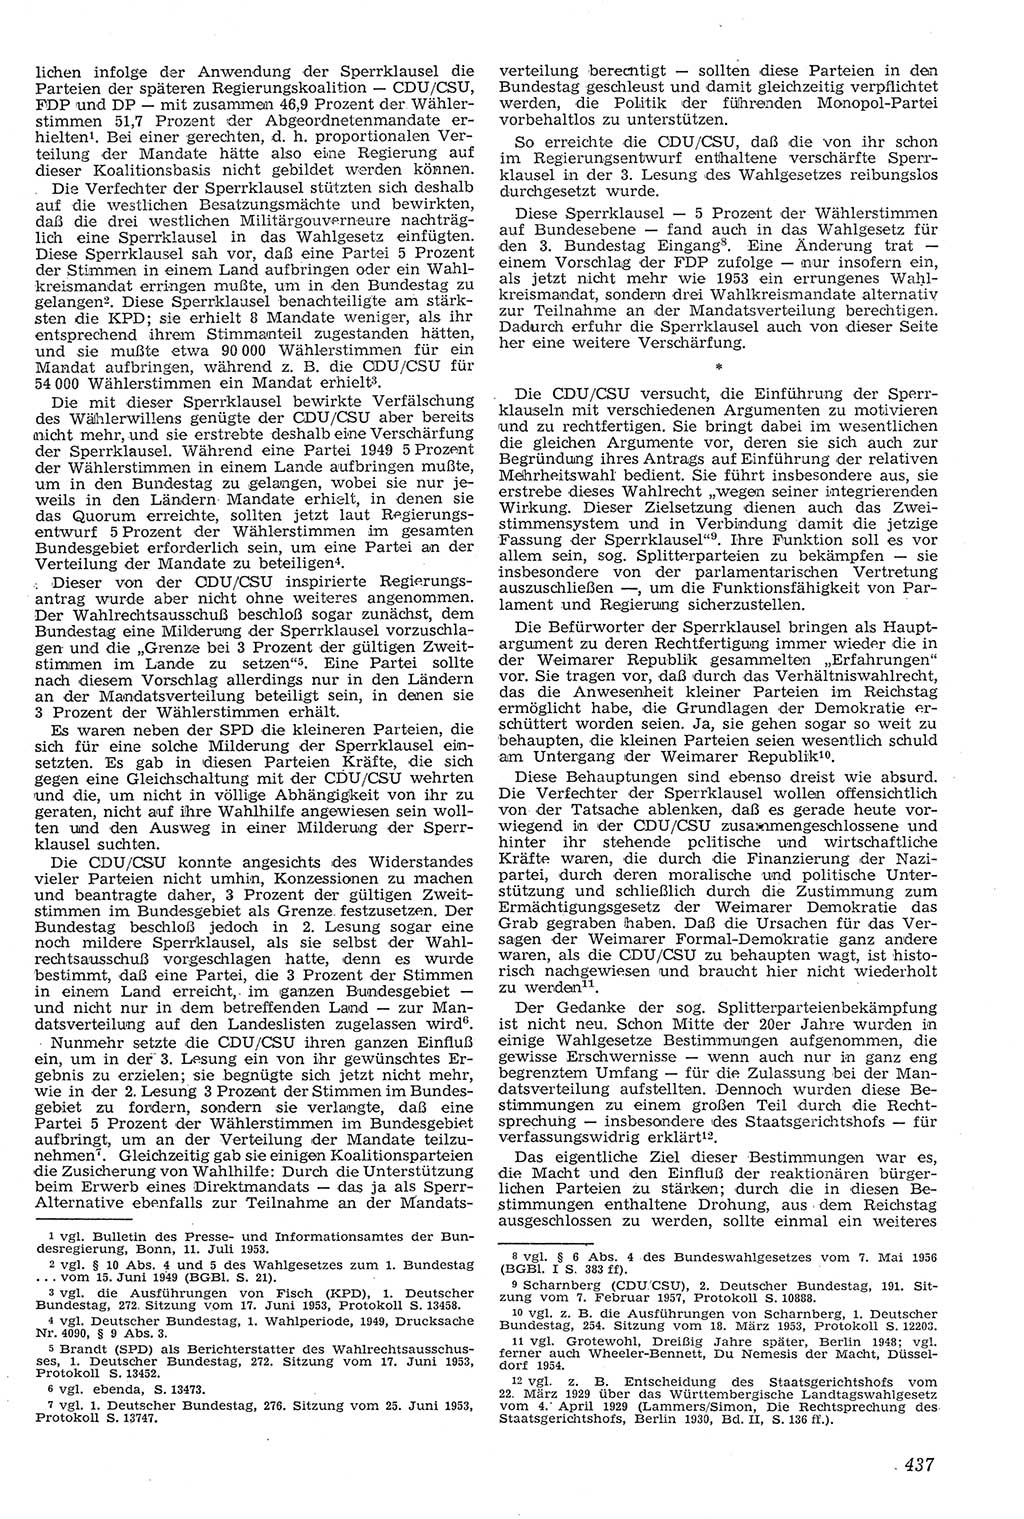 Neue Justiz (NJ), Zeitschrift für Recht und Rechtswissenschaft [Deutsche Demokratische Republik (DDR)], 11. Jahrgang 1957, Seite 437 (NJ DDR 1957, S. 437)